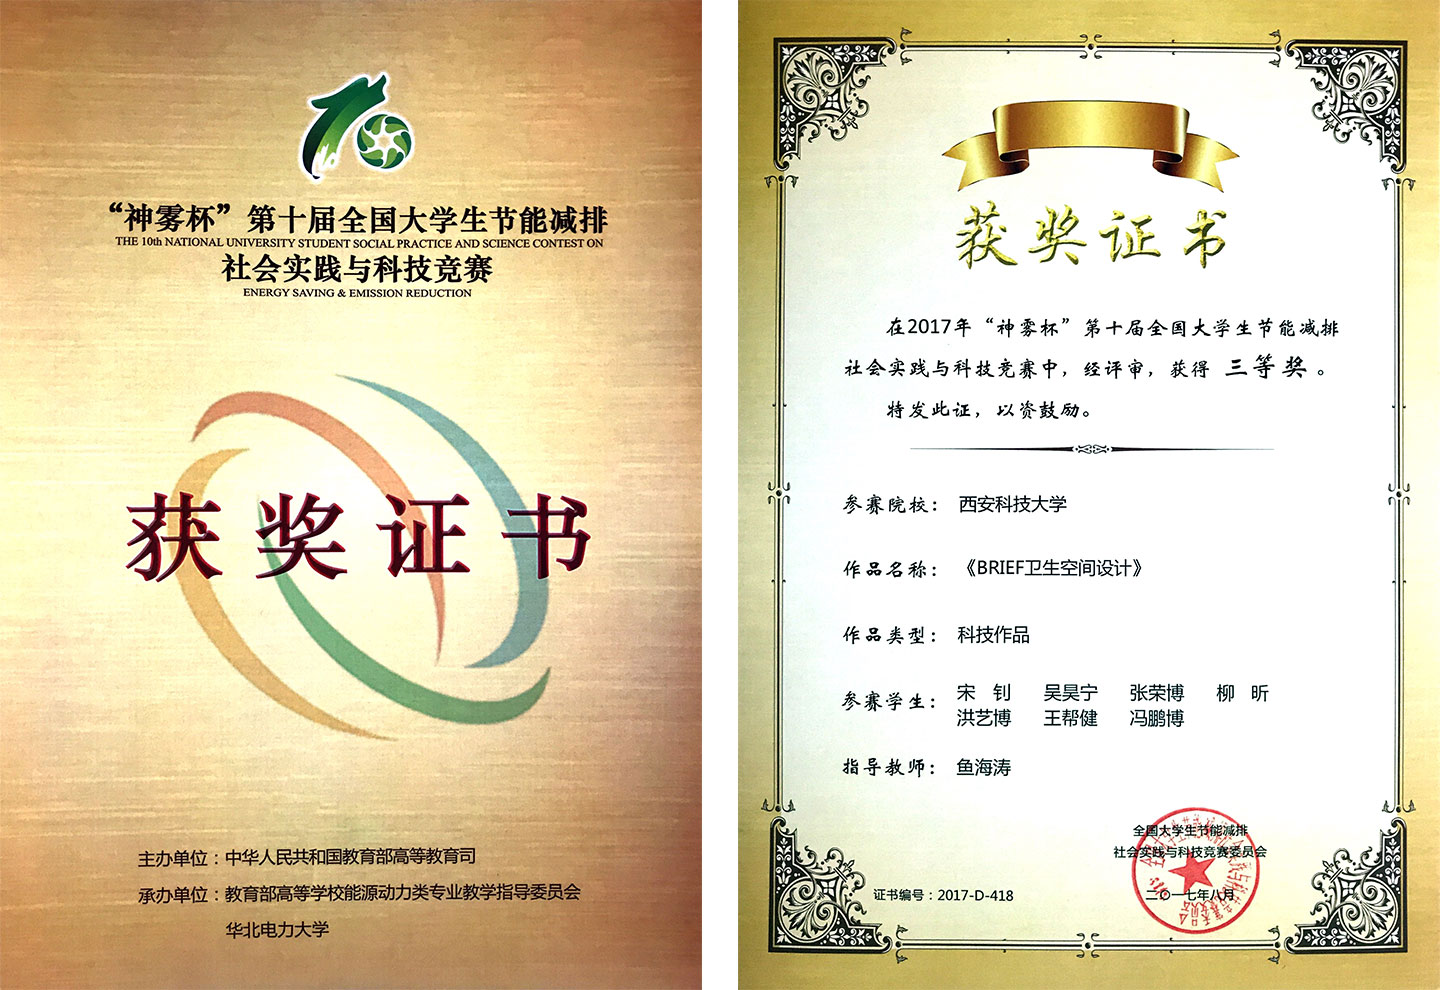 Brief Certificate